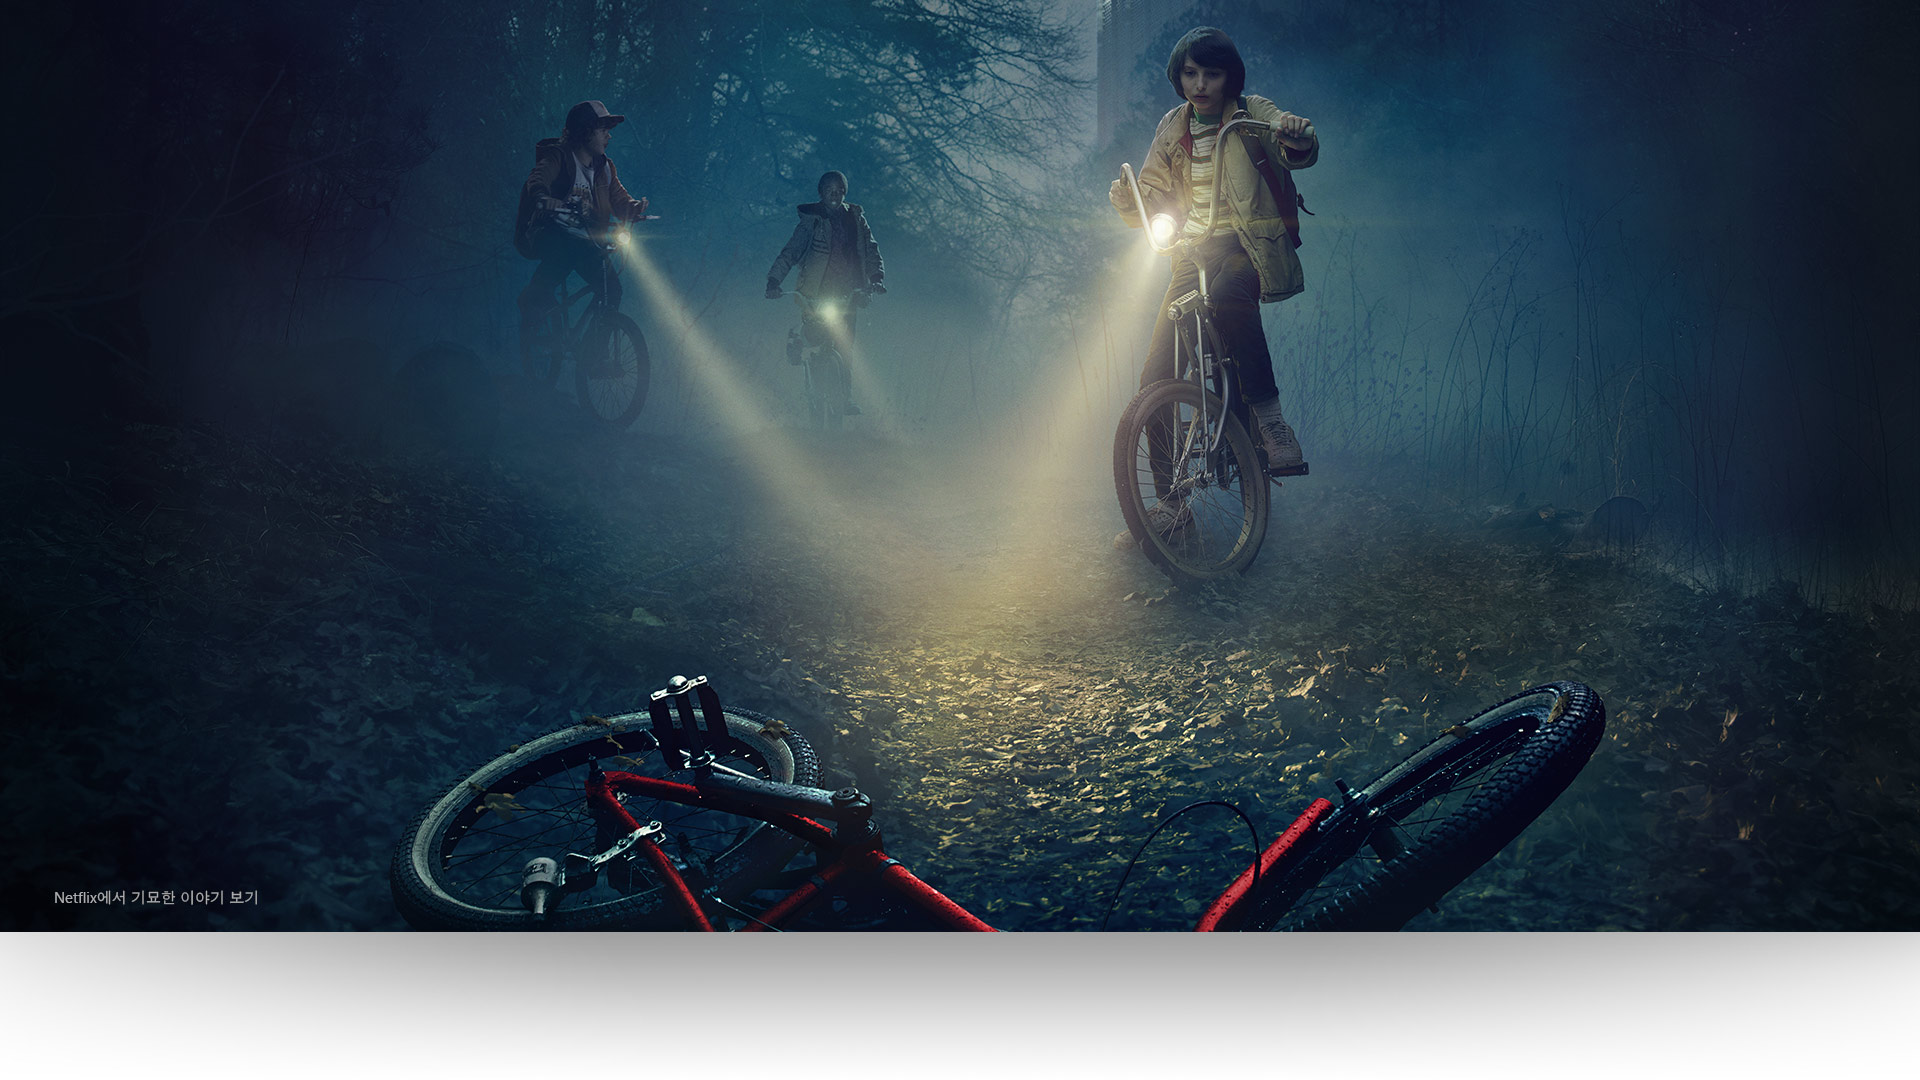 기묘한 이야기 – 더스틴과 루카스, 마이크가 음울한 숲길에 버려진 자전거에 불빛을 비춥니다. 넷플릭스에서 기묘한 이야기를 시청하세요.